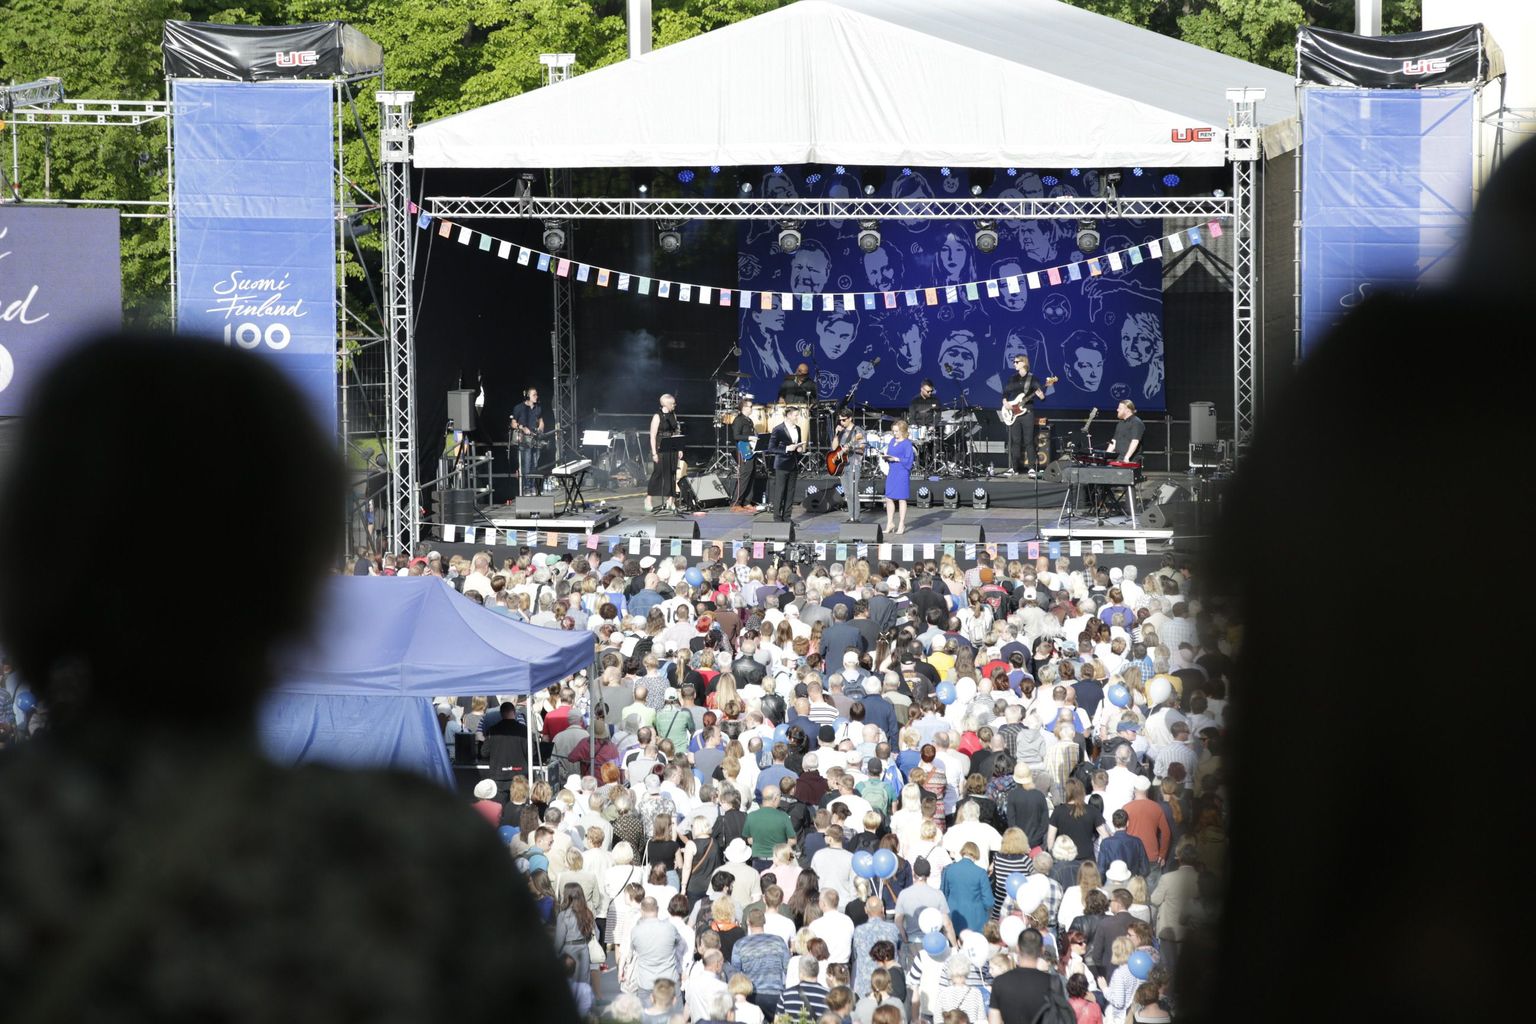 Soome 100 suurkontsert Vabaduse väljakul